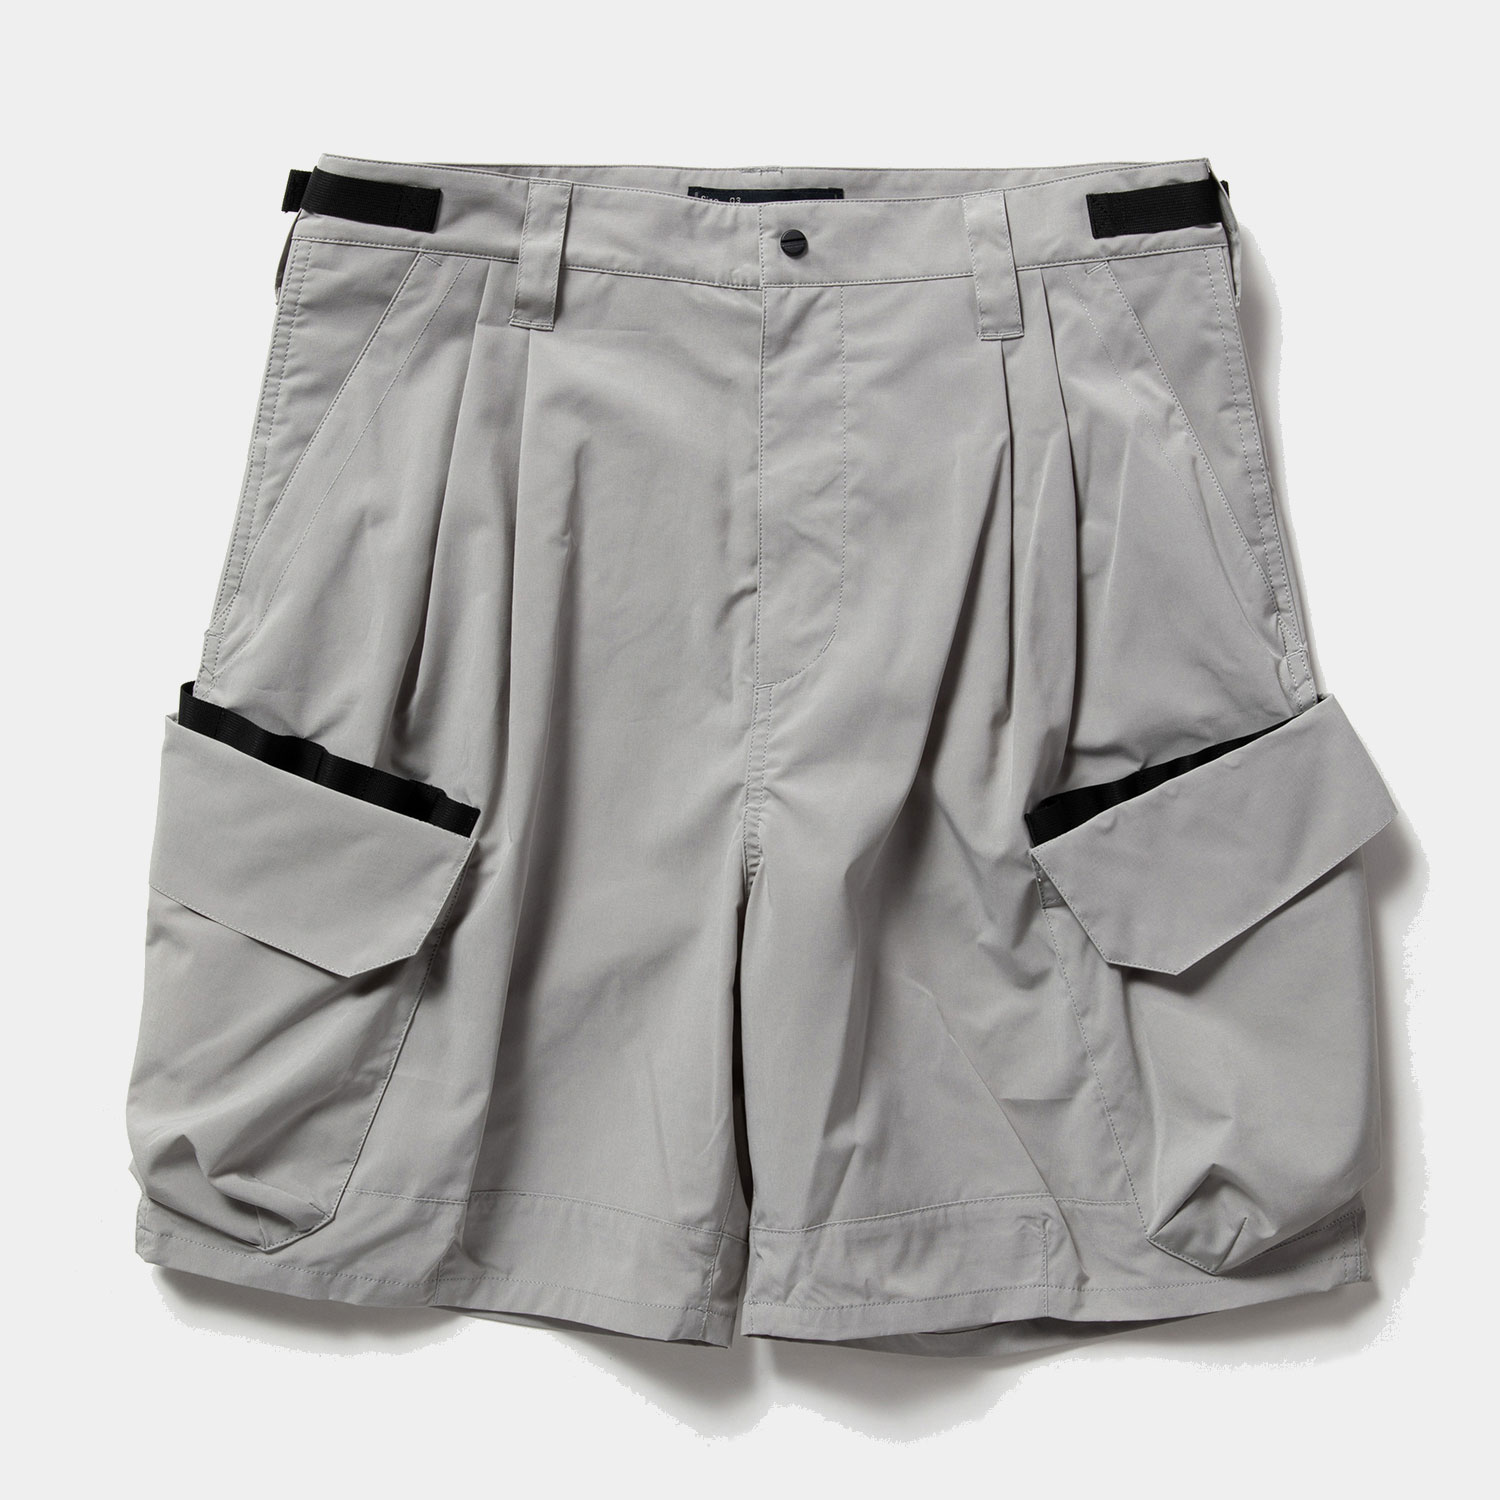 Luggage Cargo Shorts / Grey